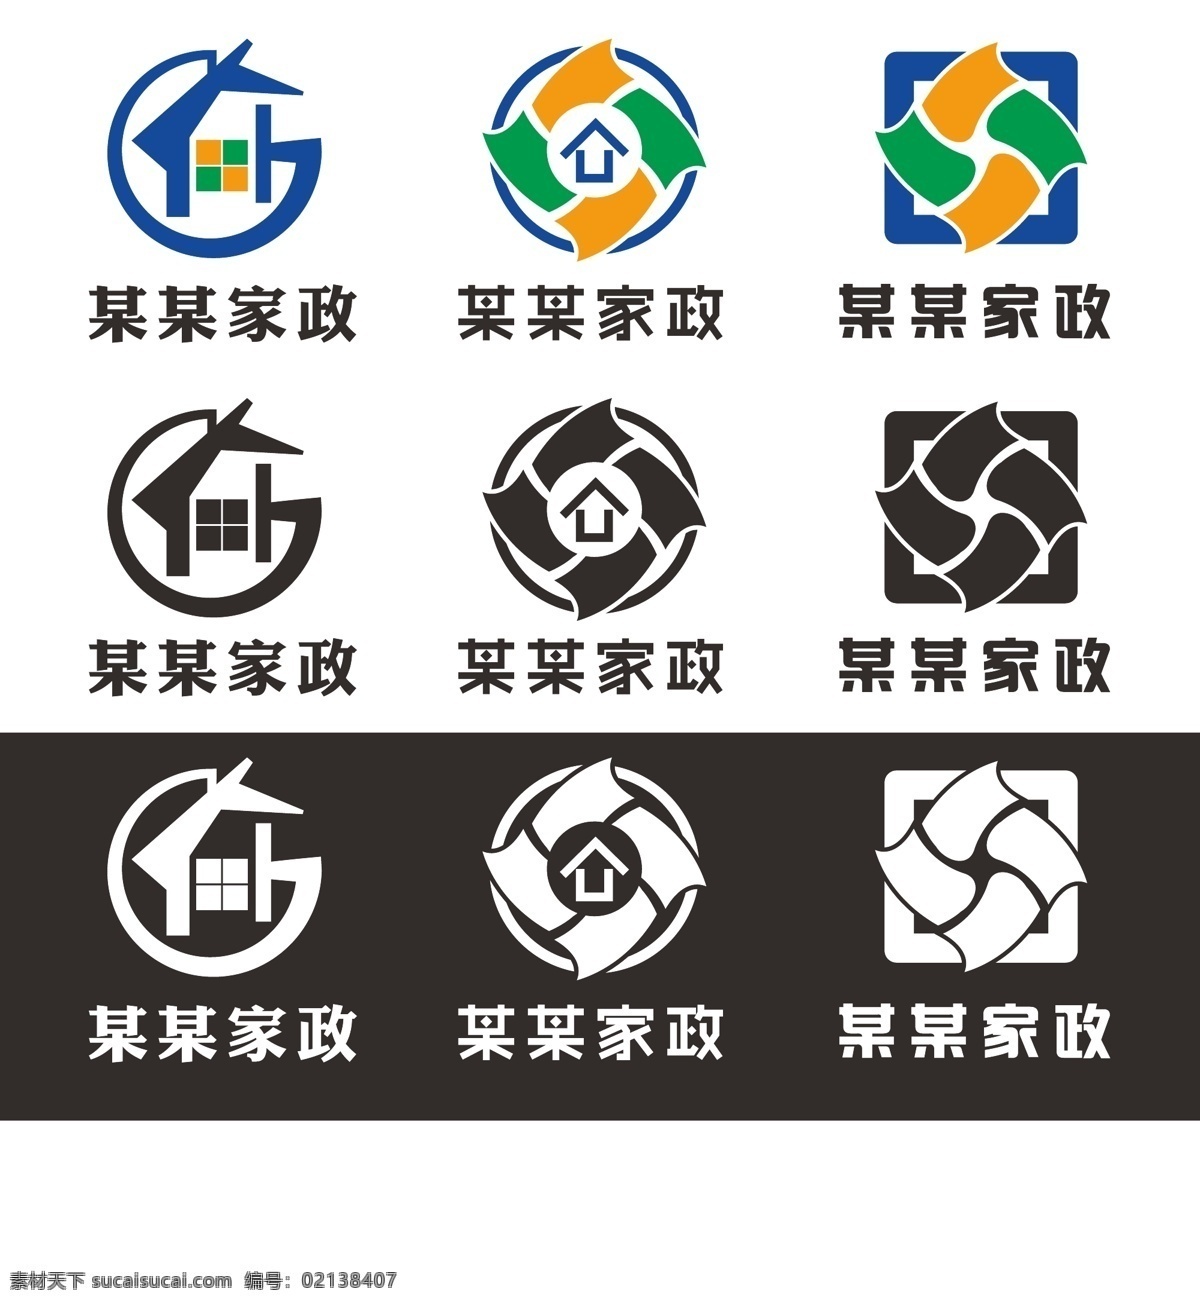 家政公司 logo 标志 标识 家政 vi 企业形象设计 logo设计